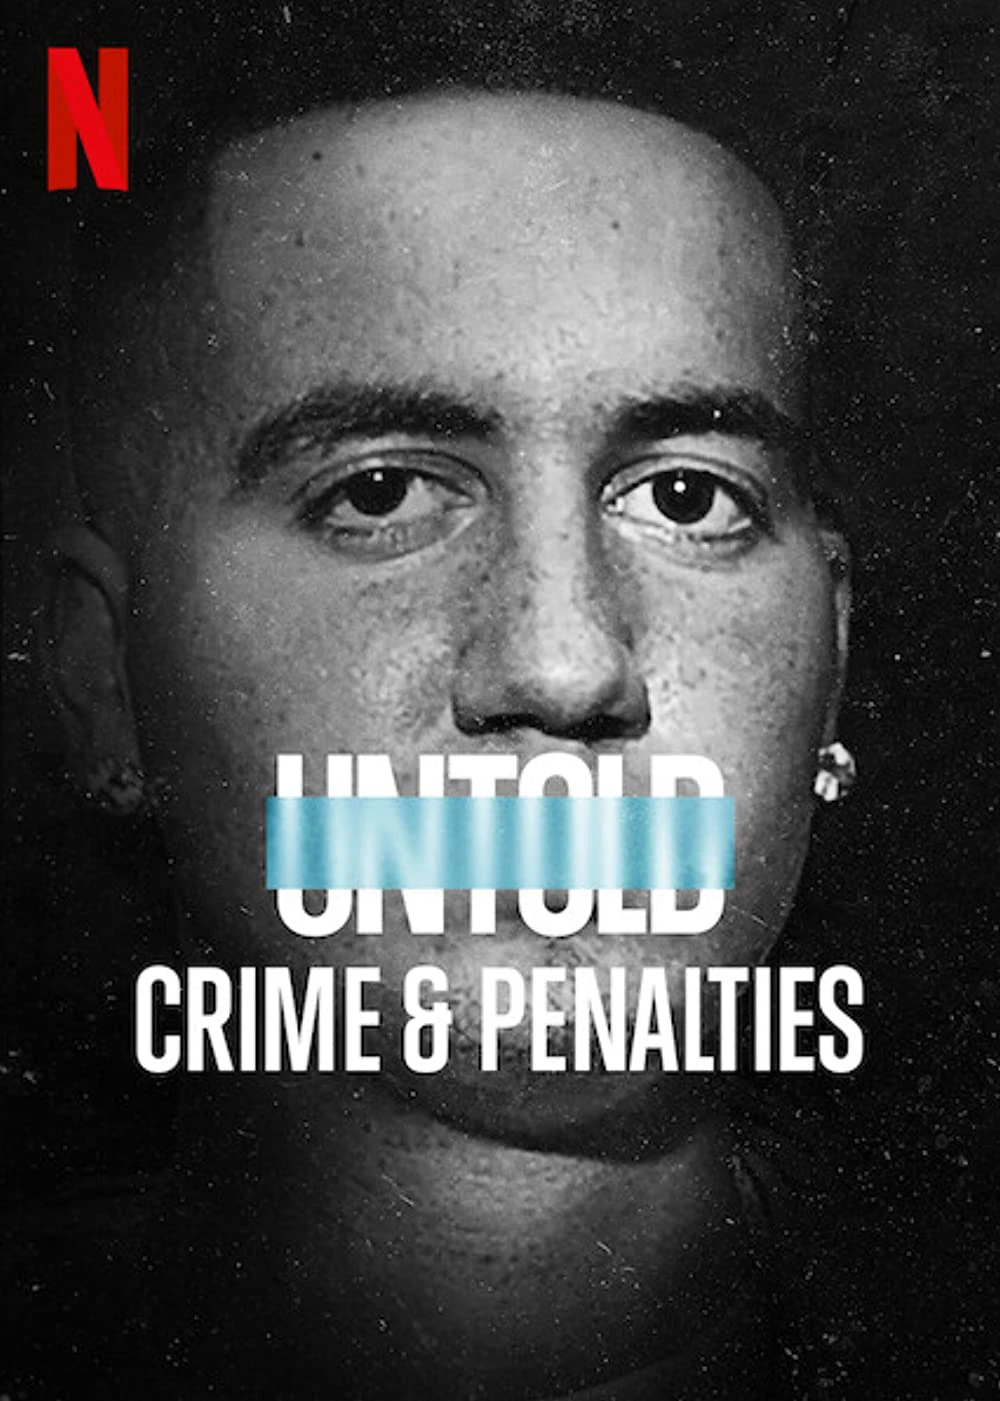 Bí mật giới thể thao: Tội ác và án phạt | Untold: Crime & Penalties (2021)